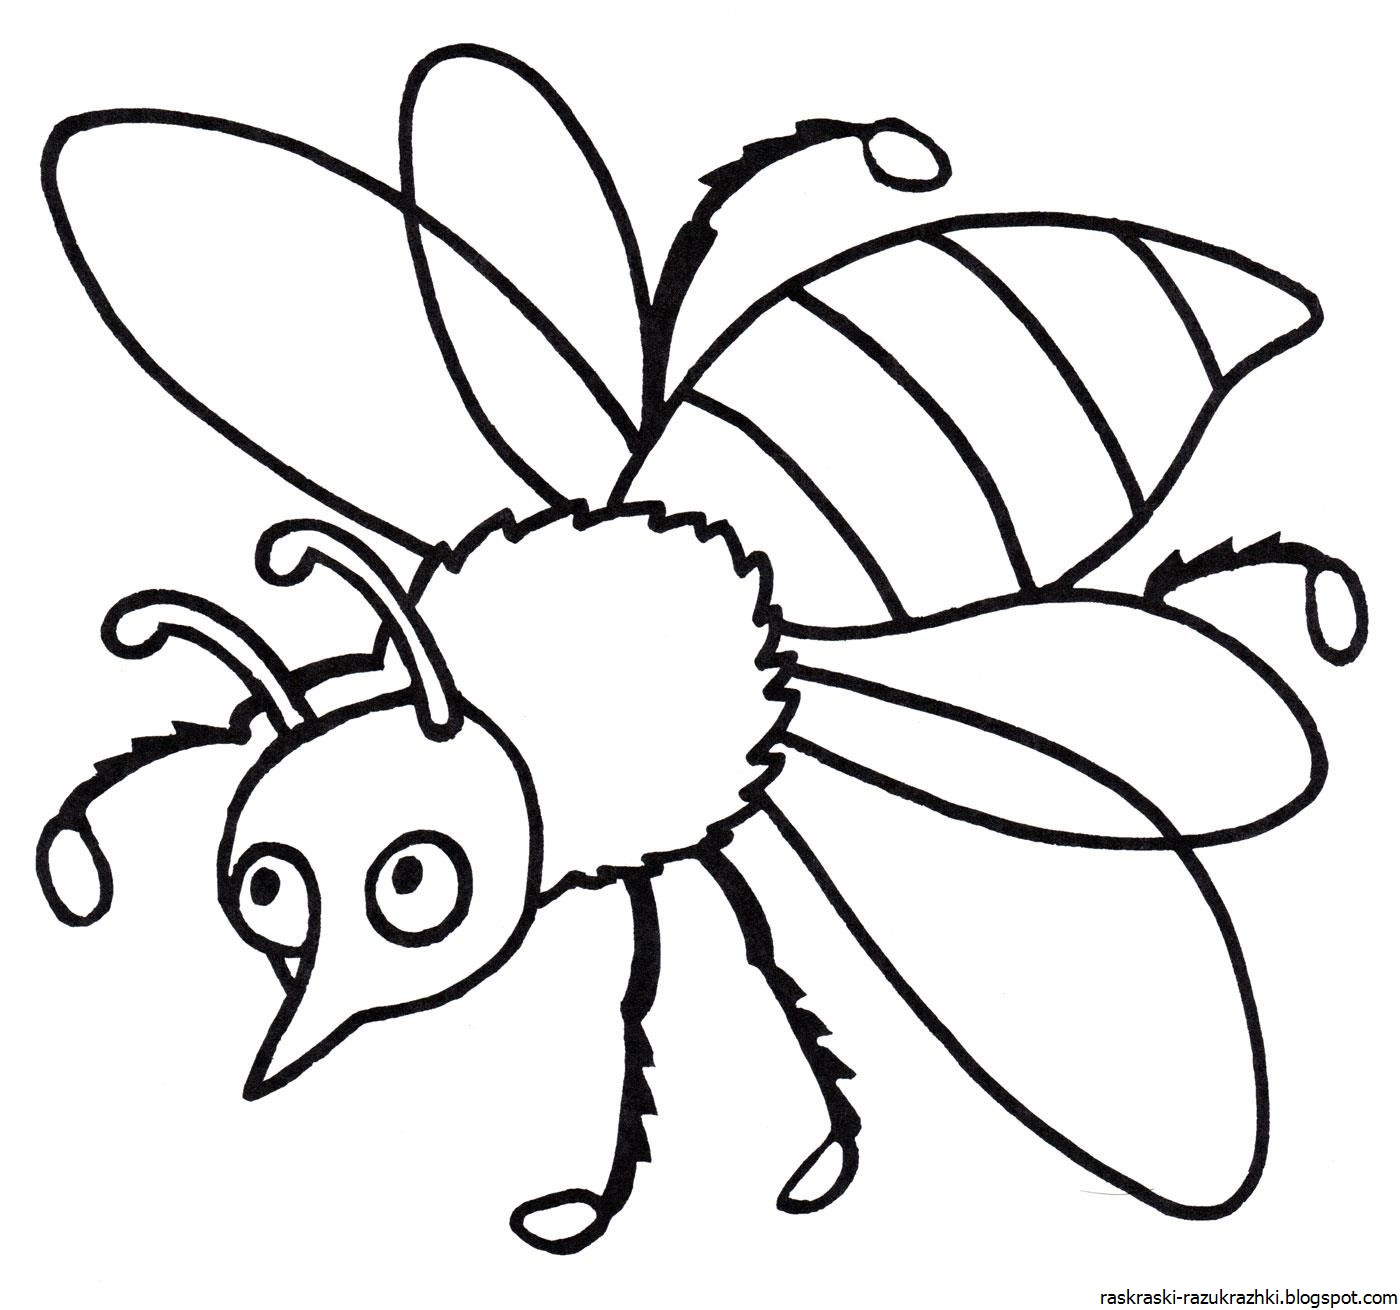 Раскраска насекомые для детей 3 лет. Насекомые раскраска для детей. Раскраски насекомые для детей 5-6 лет. Пчела раскраска. Раскраска насекомые для малышей.